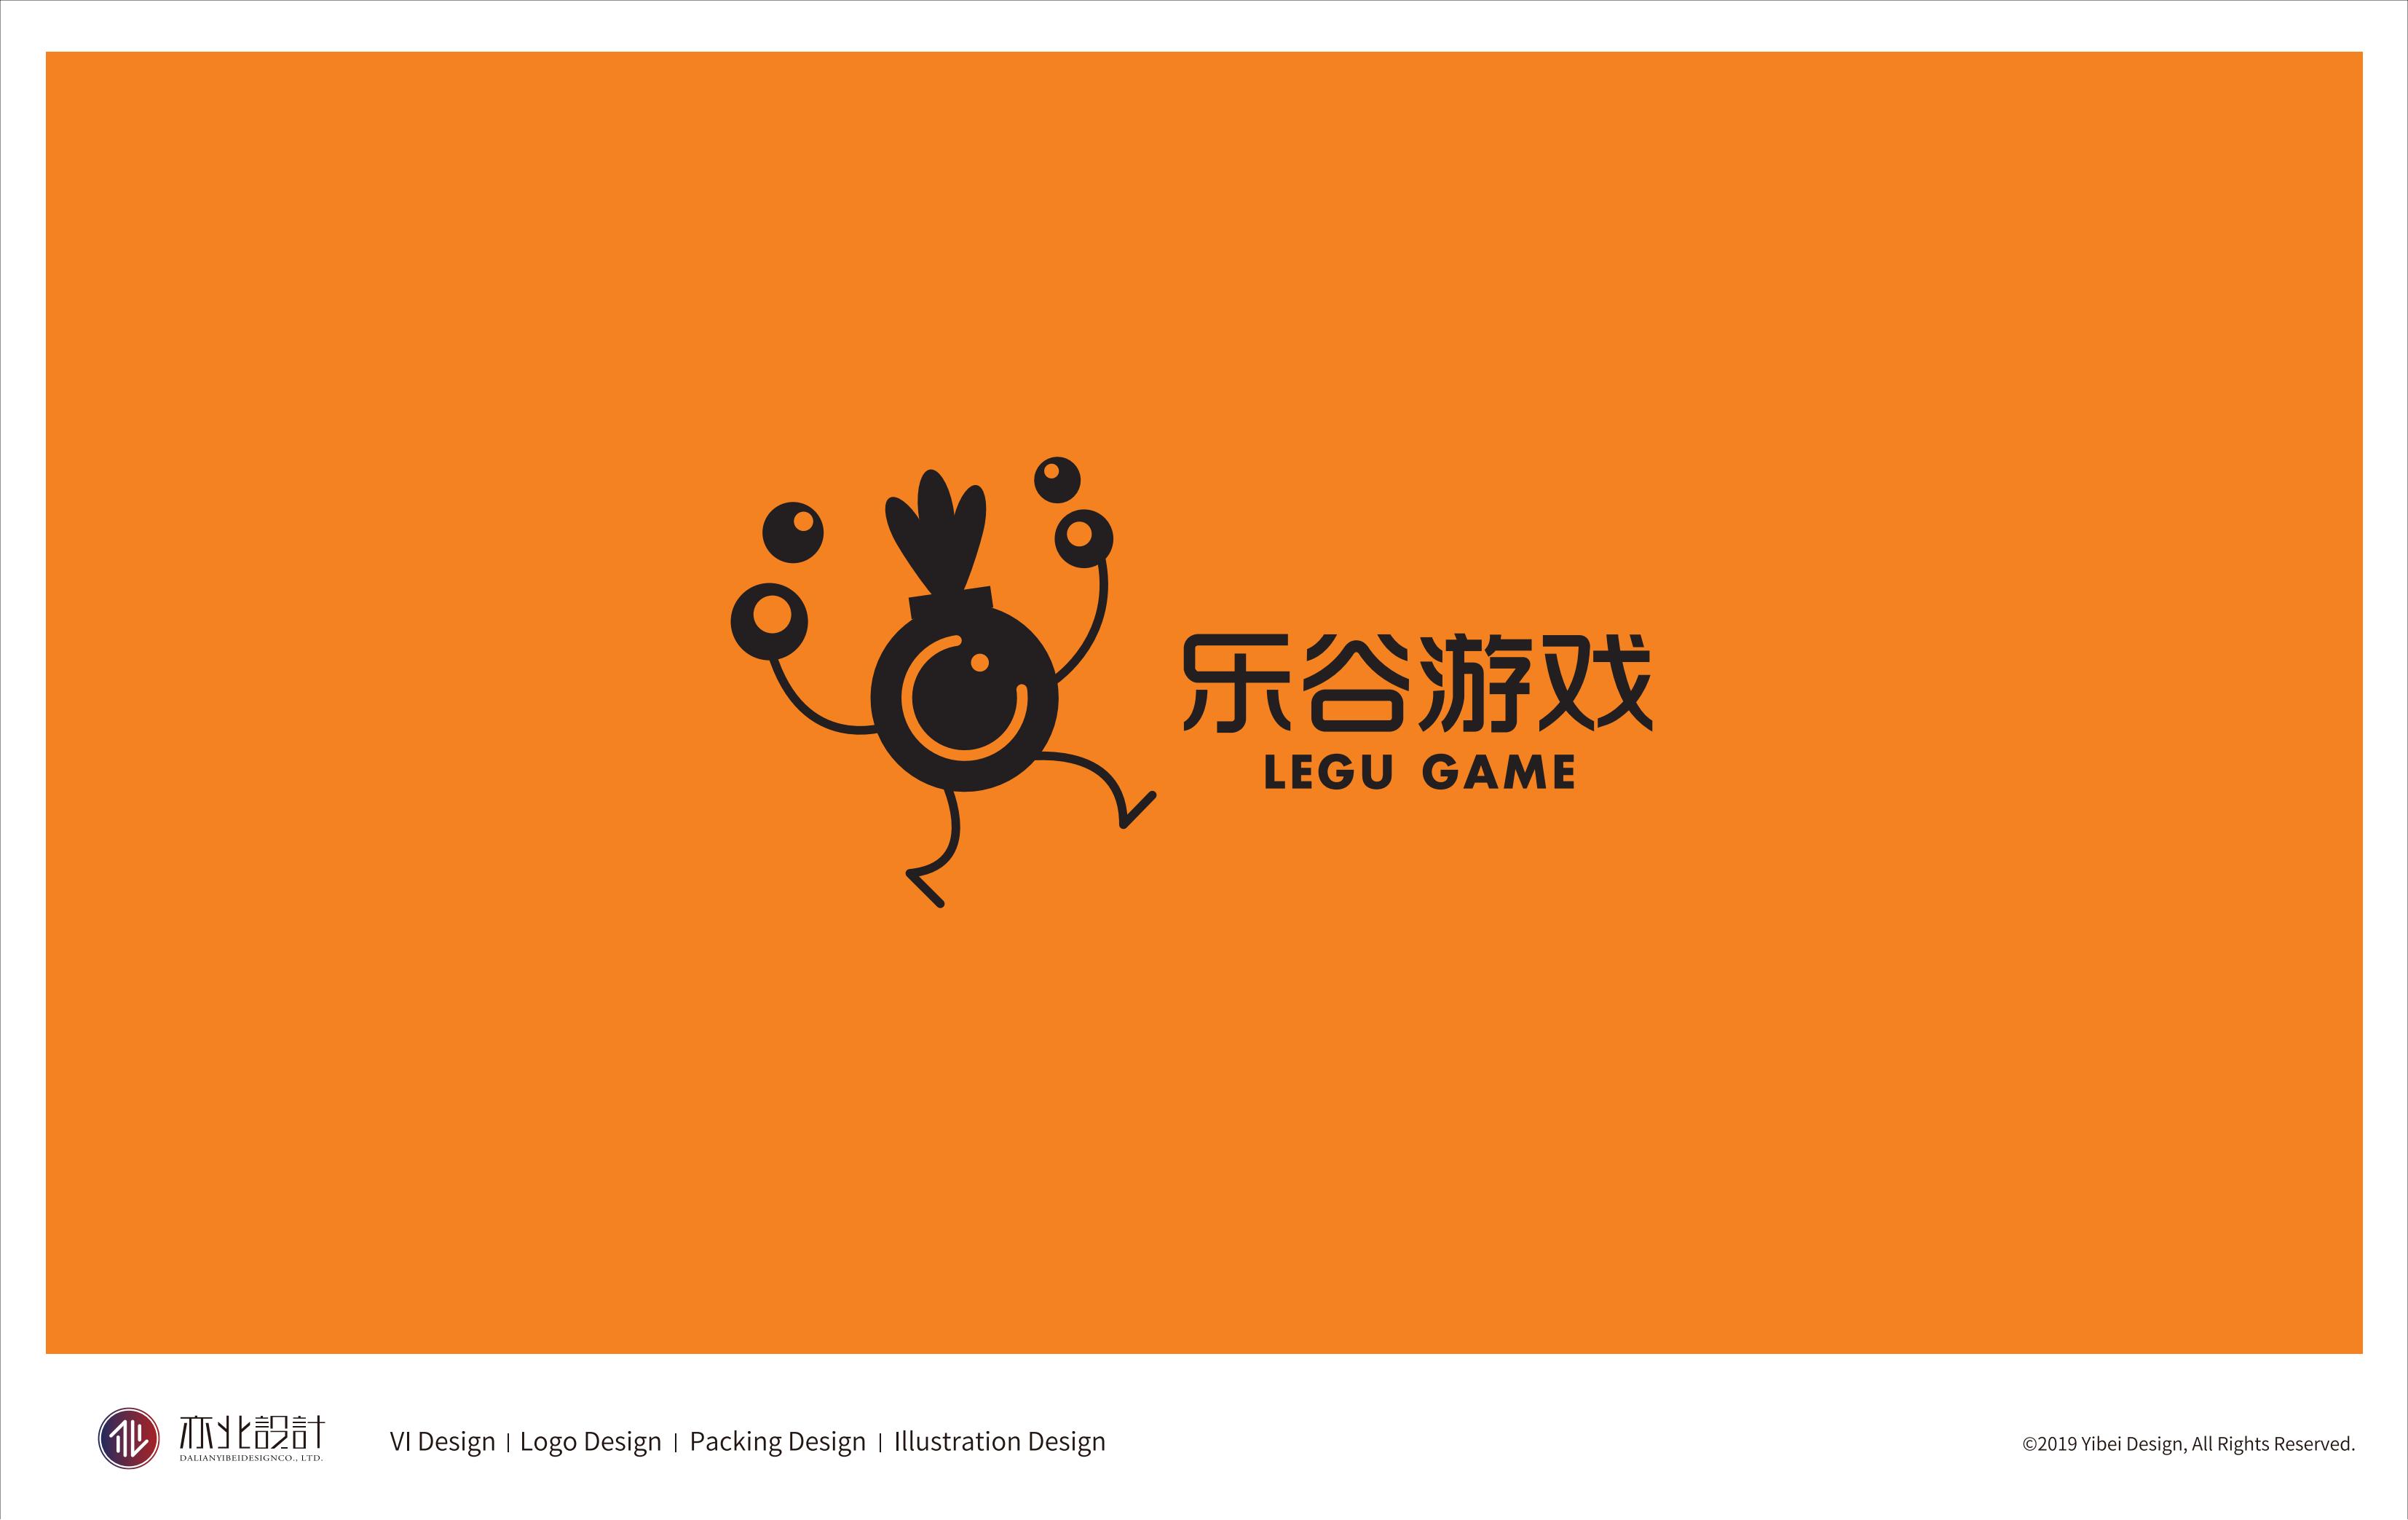 乐谷游logo设计餐饮服装游戏教育卡通品牌vi设计